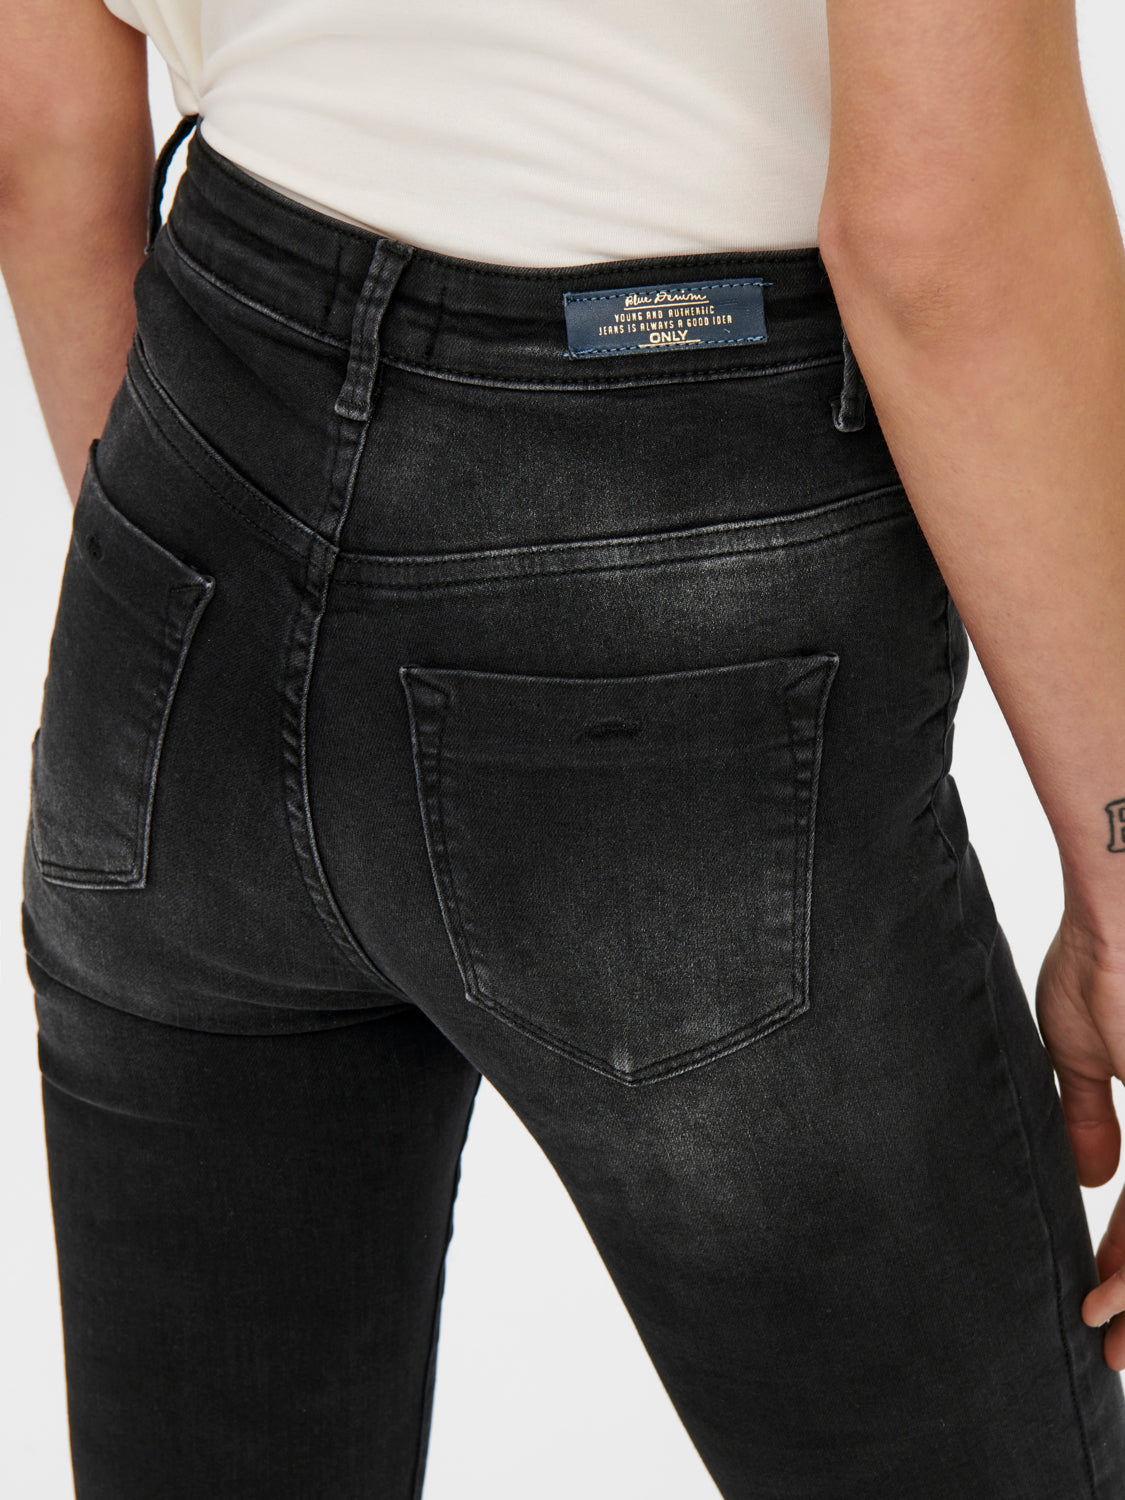 ONLFOREVER Jeans - Washed Black